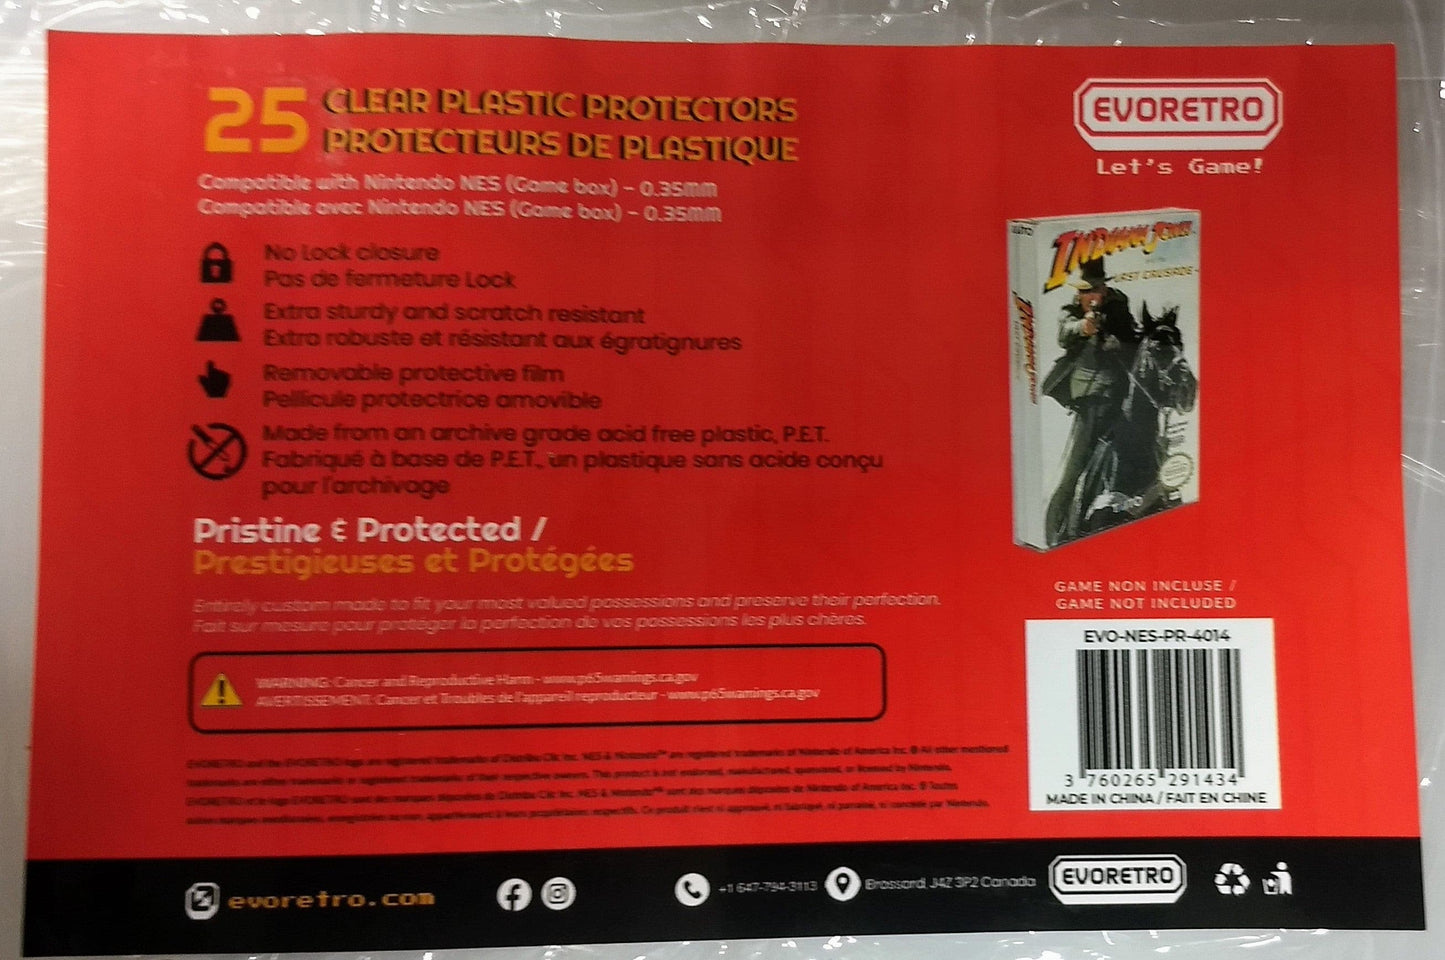 PROTECTEURS DE PLASTIQUE NINTENDO NES .4mm POUR LES BOITES - jeux video game-x